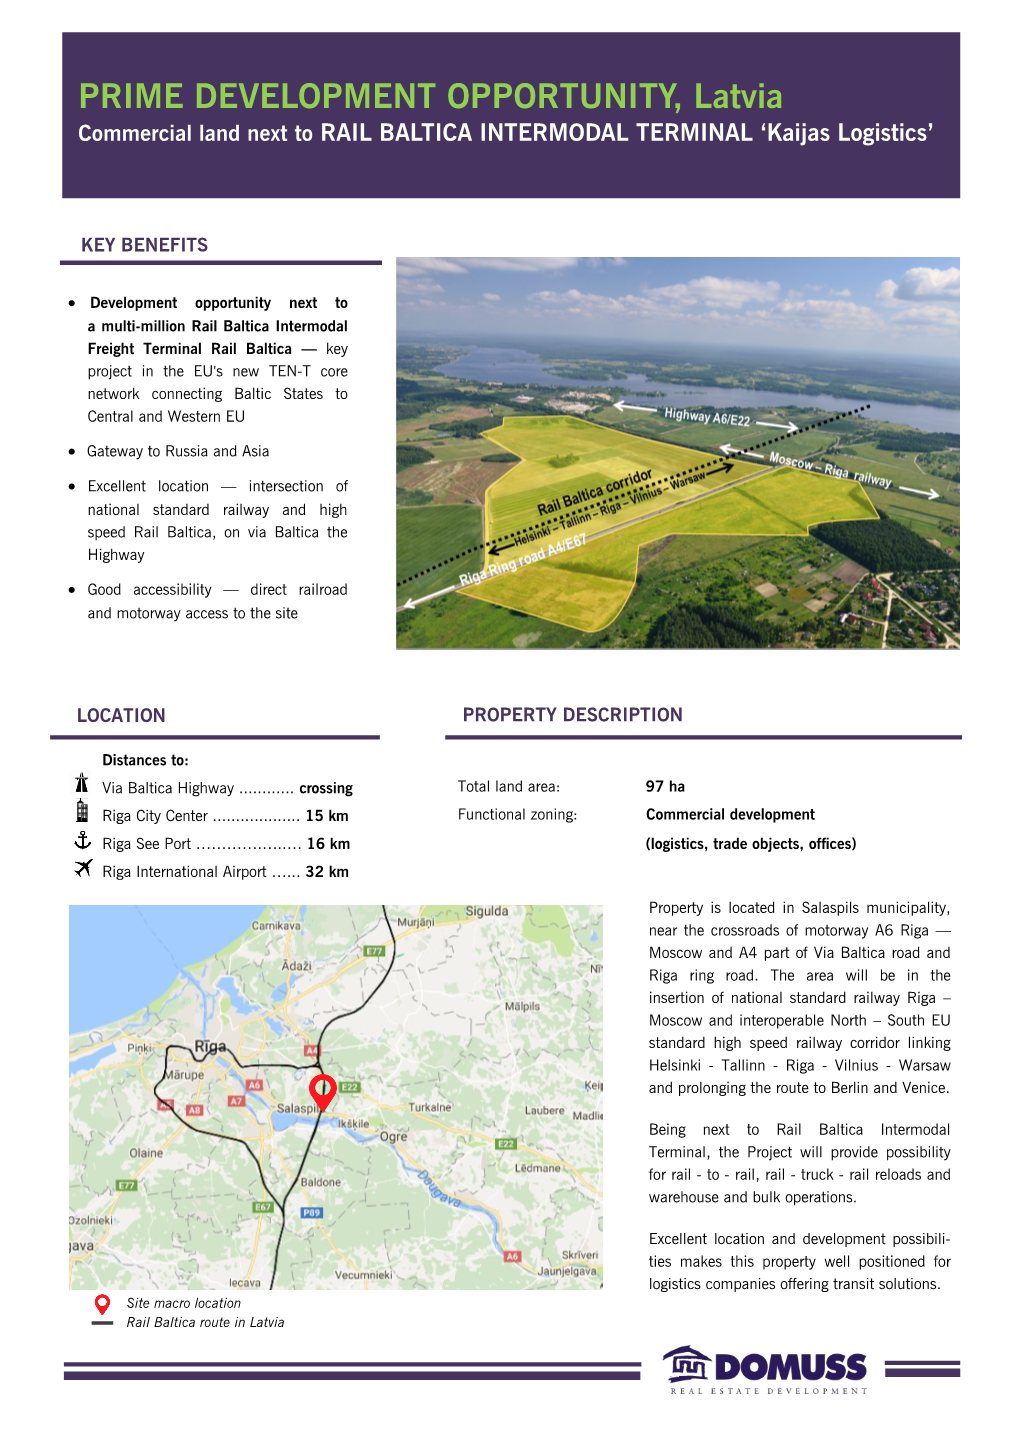 PRIME DEVELOPMENT OPPORTUNITY, Latvia Commercial Land Next to RAIL BALTICA INTERMODAL TERMINAL ‘Kaijas Logistics’